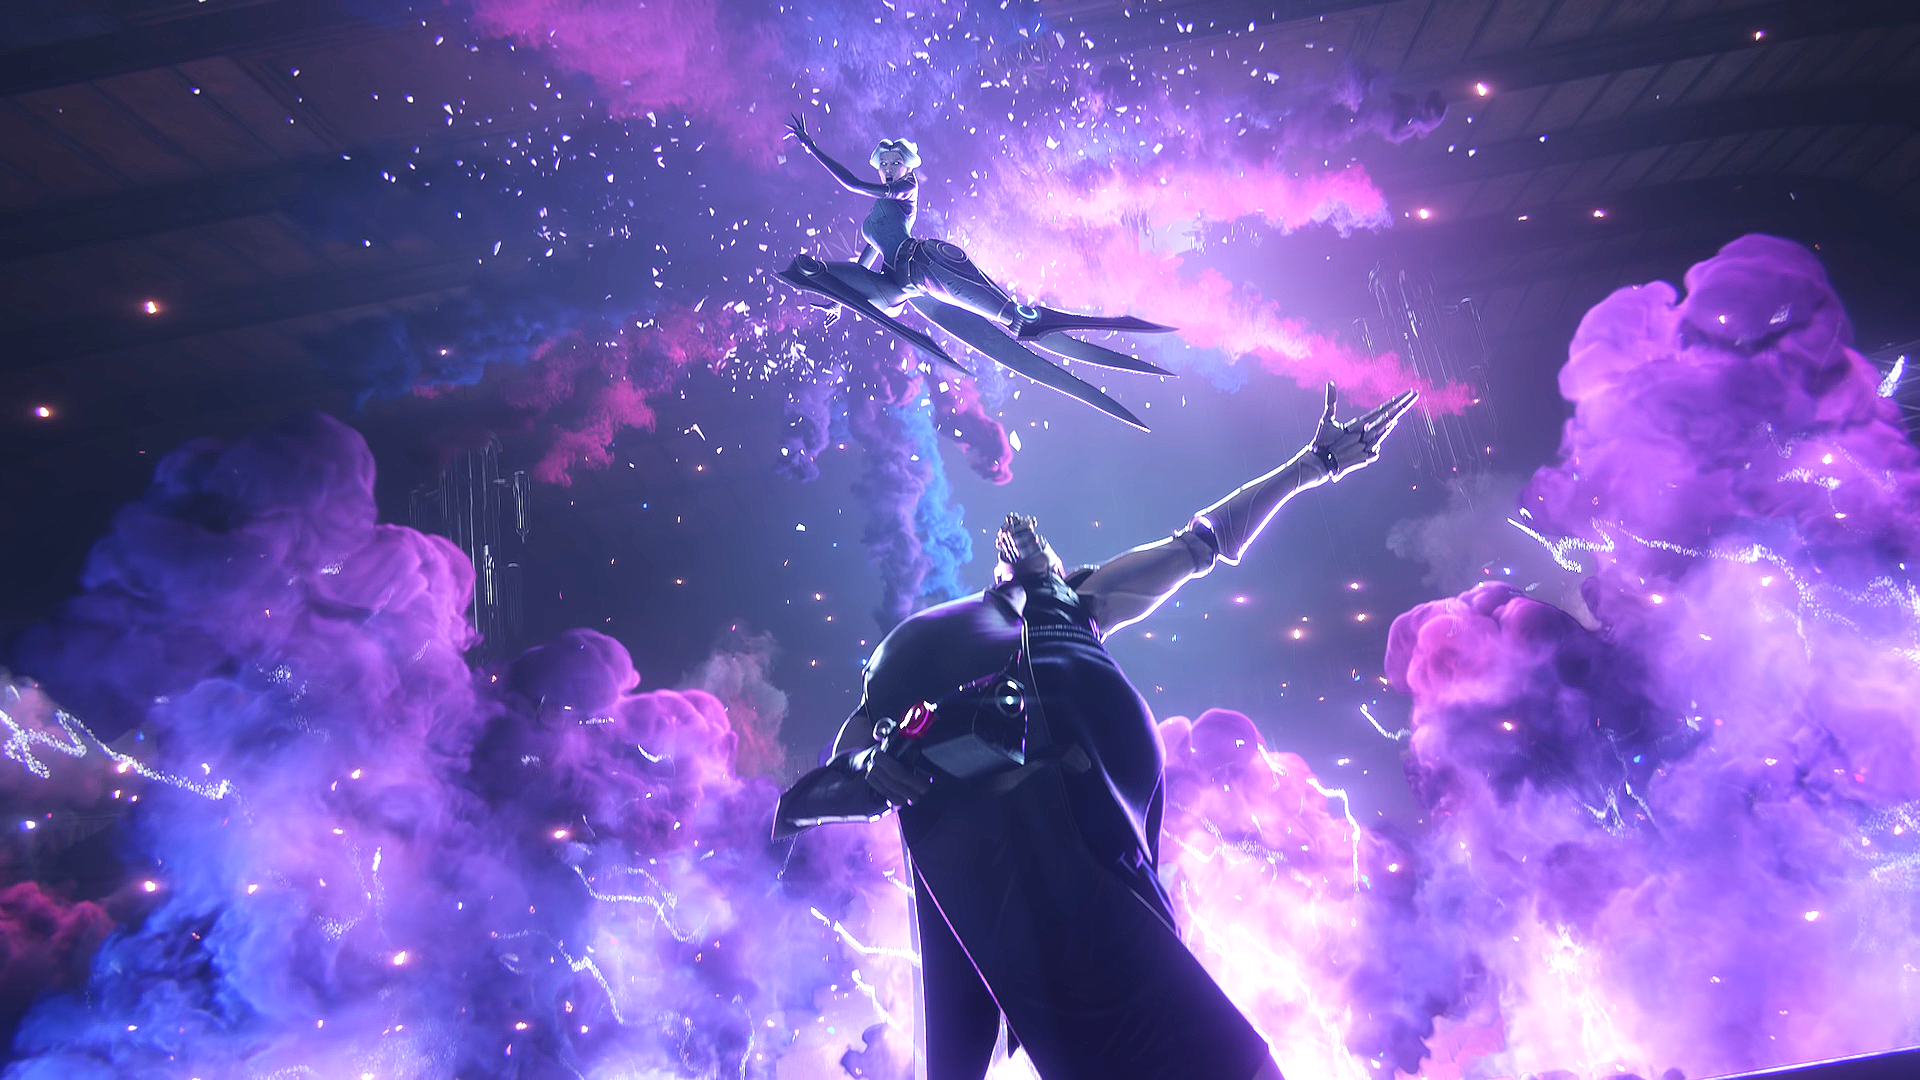 jhin wallpaper,púrpura,violeta,cielo,juego de acción y aventura,espacio